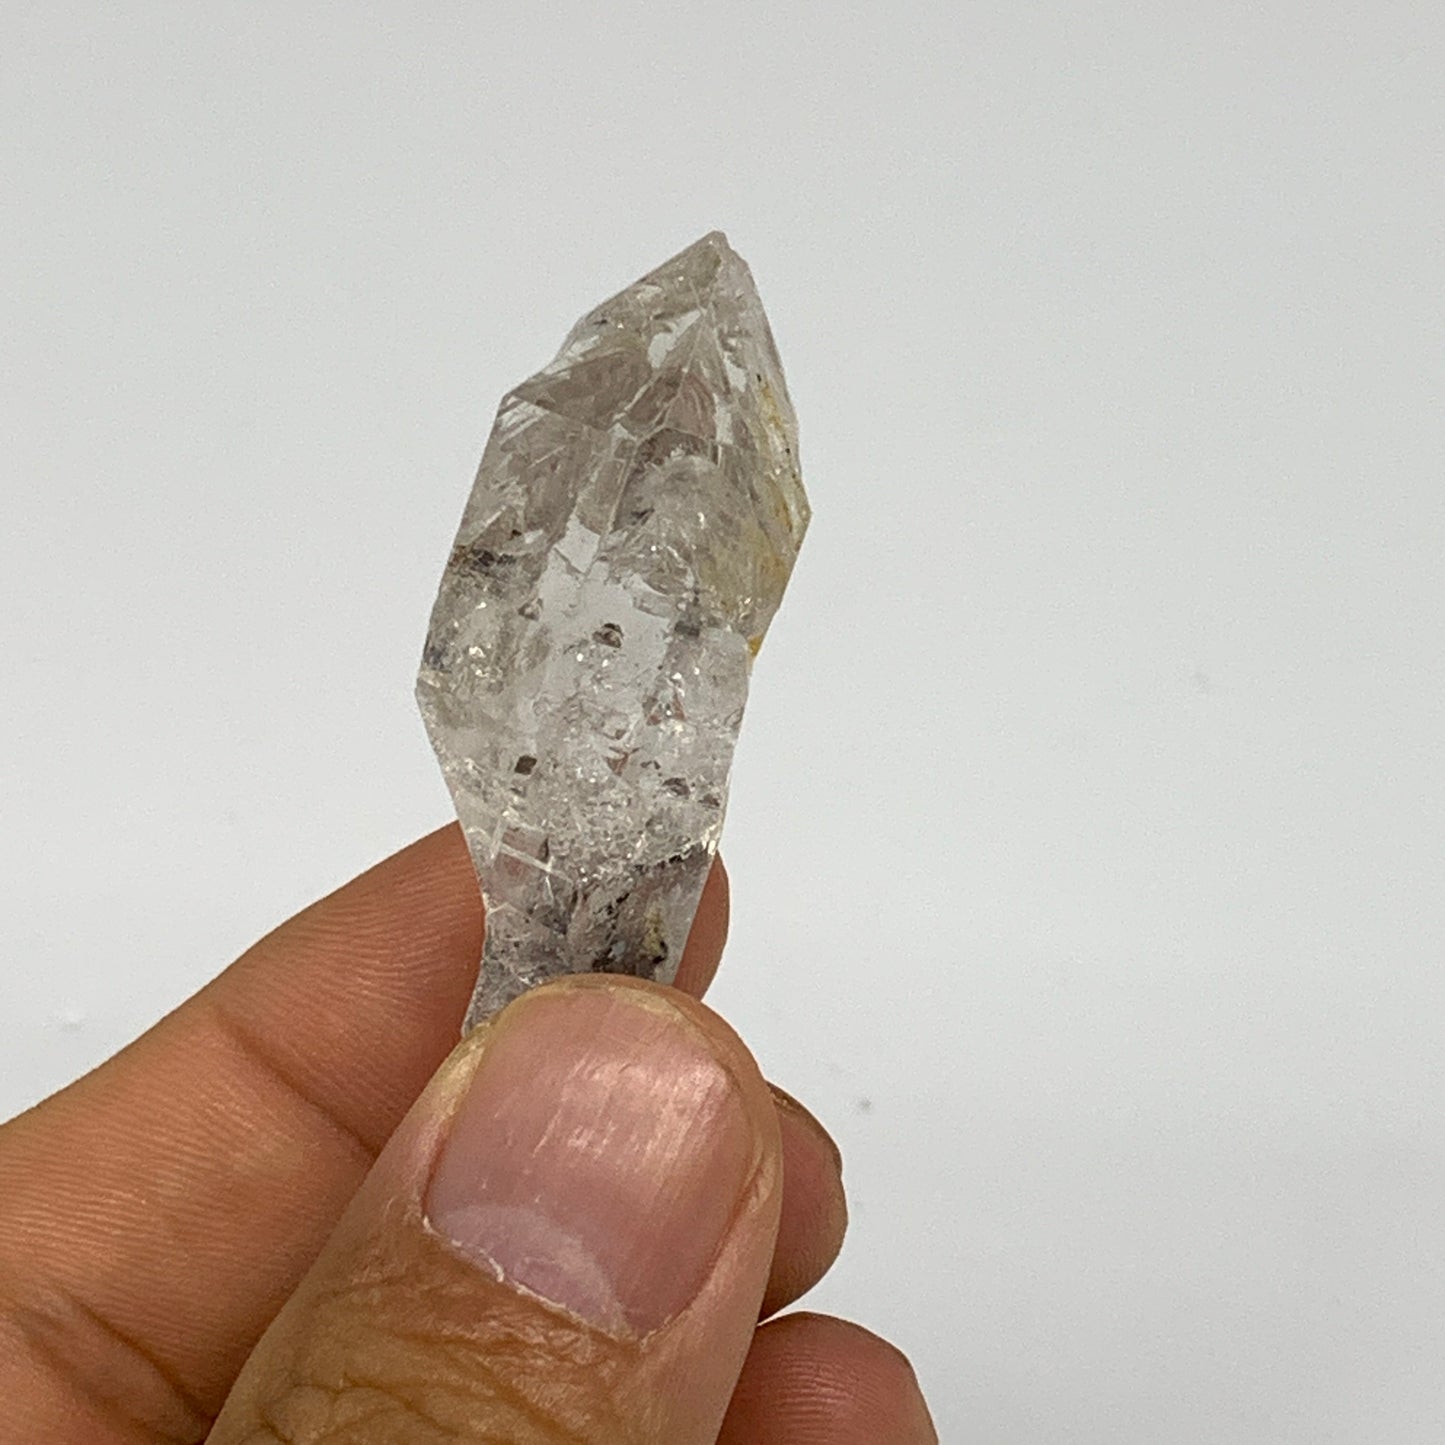 16.4g, 1.8"x0.8"x0.6", Natural Window Quartz Crystal Terminated @Pakistan,B27546